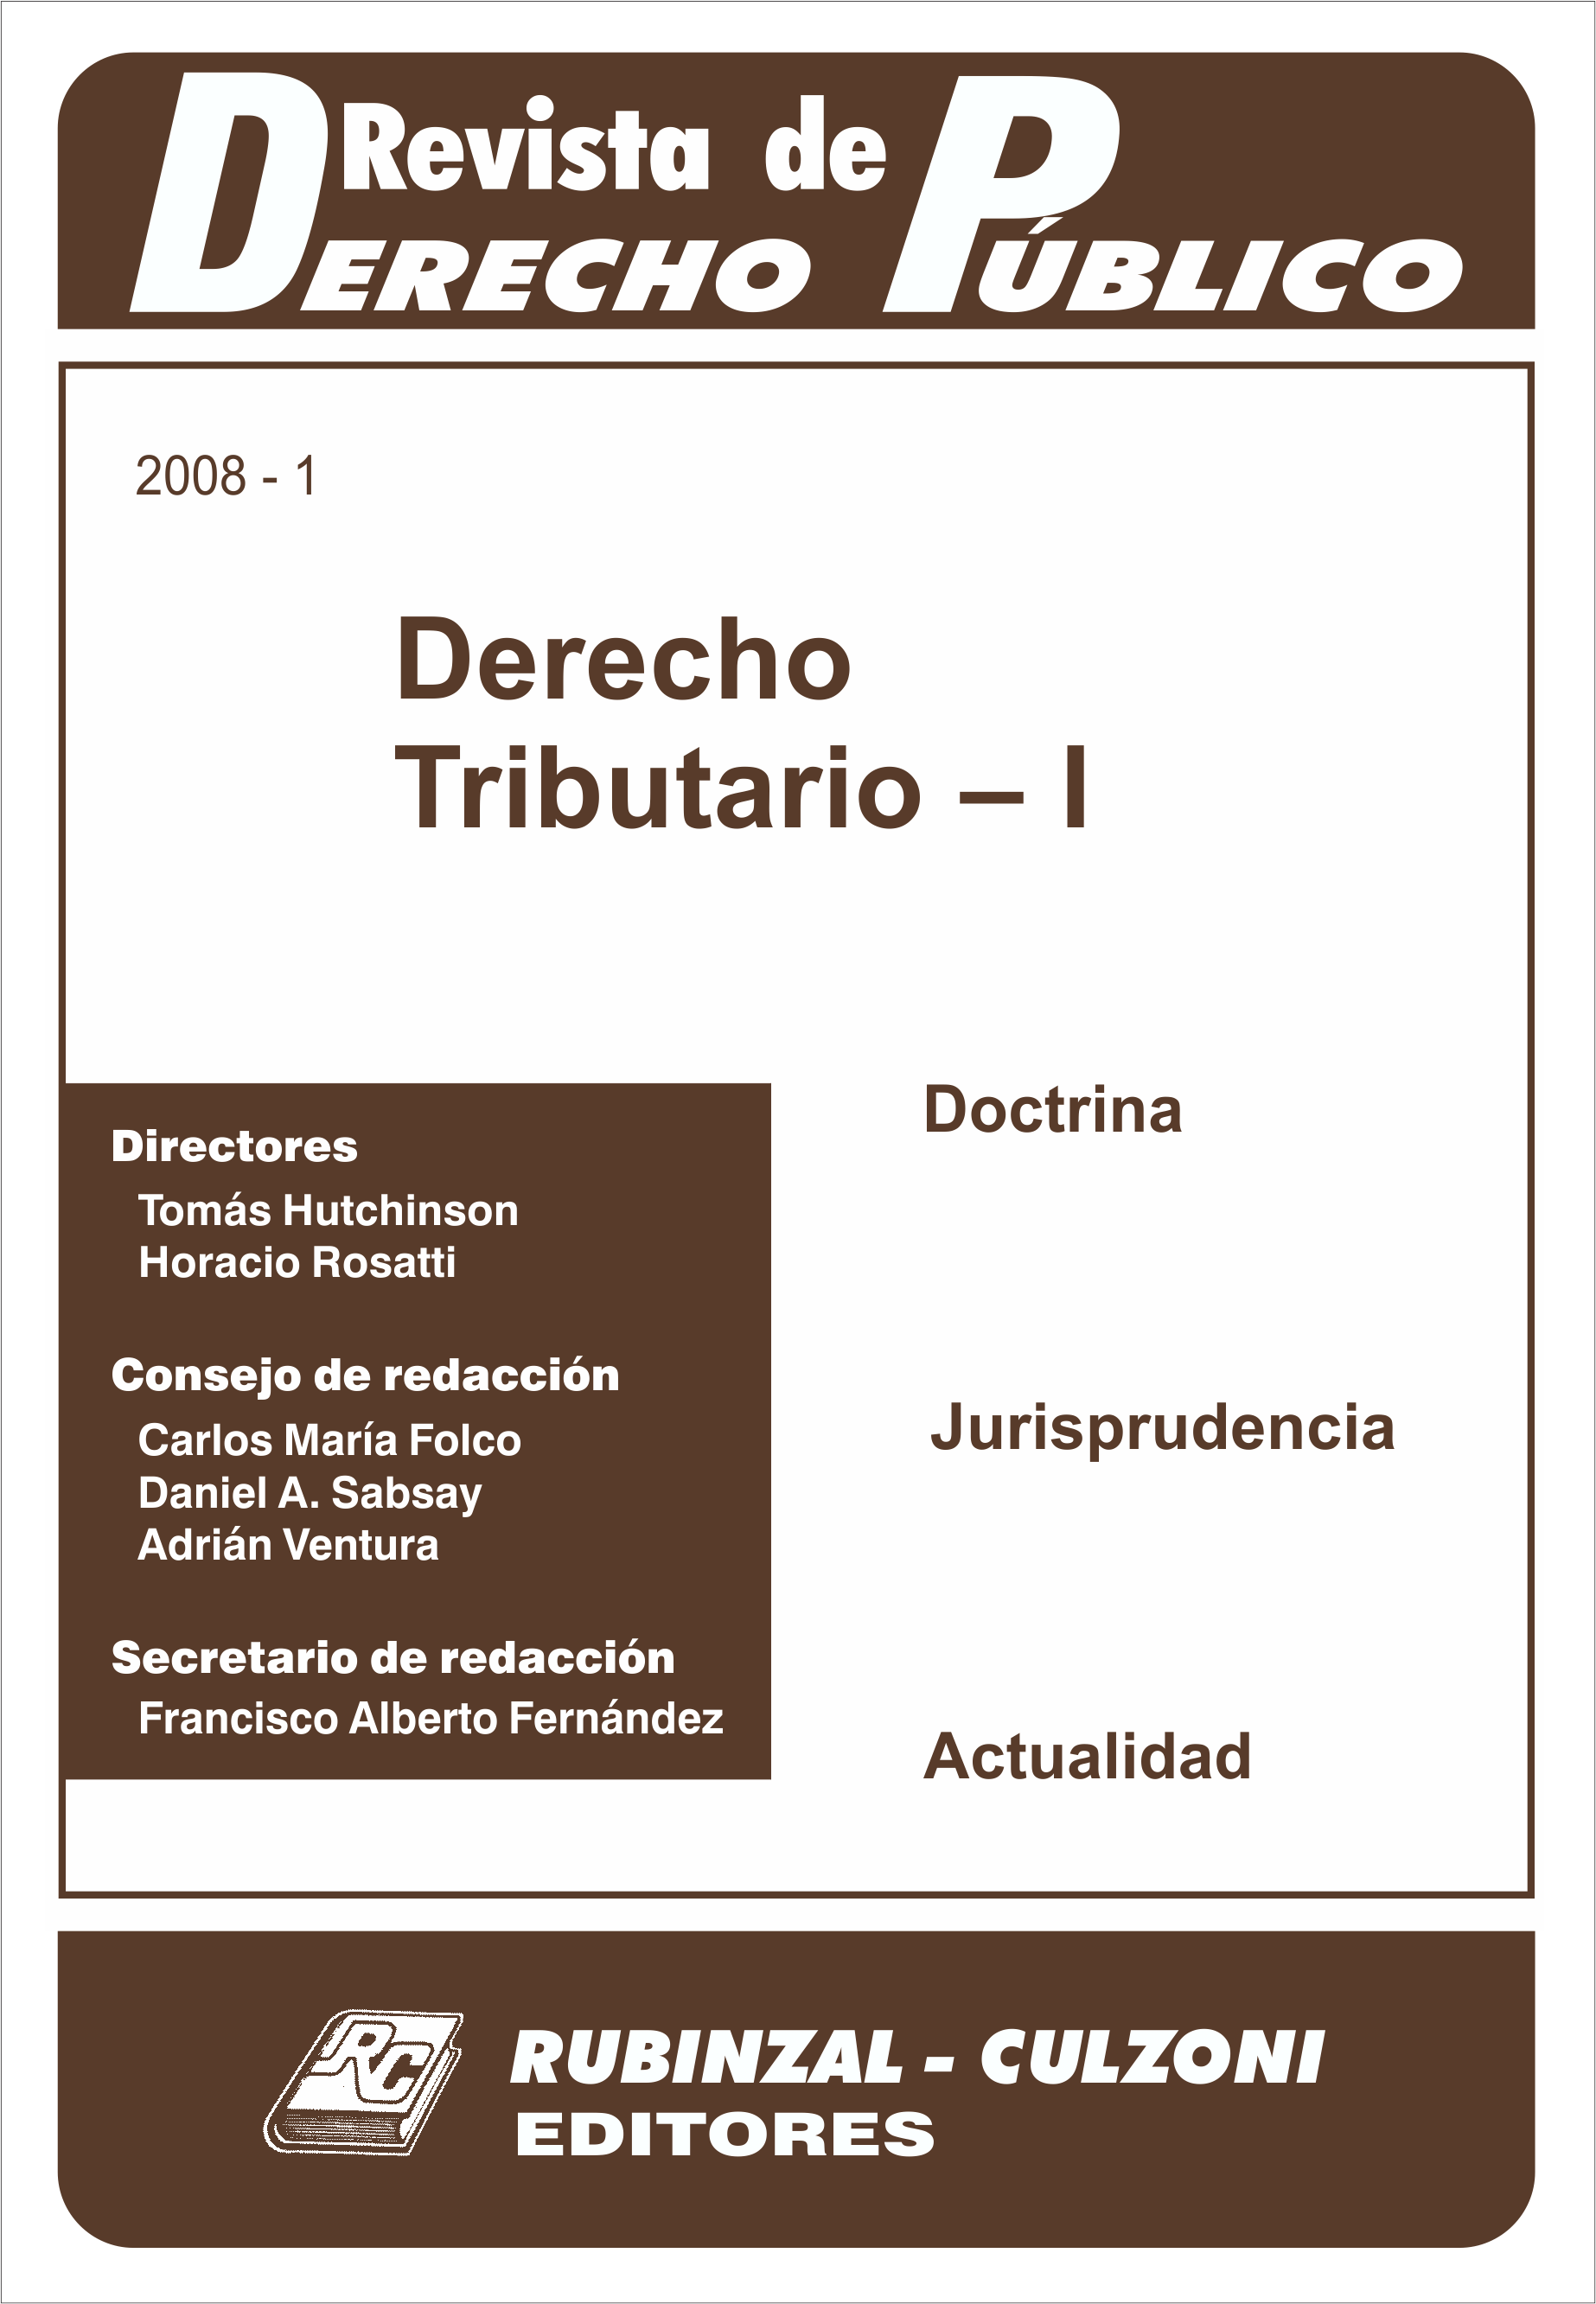 Revista de Derecho Público - Derecho Tributario - I